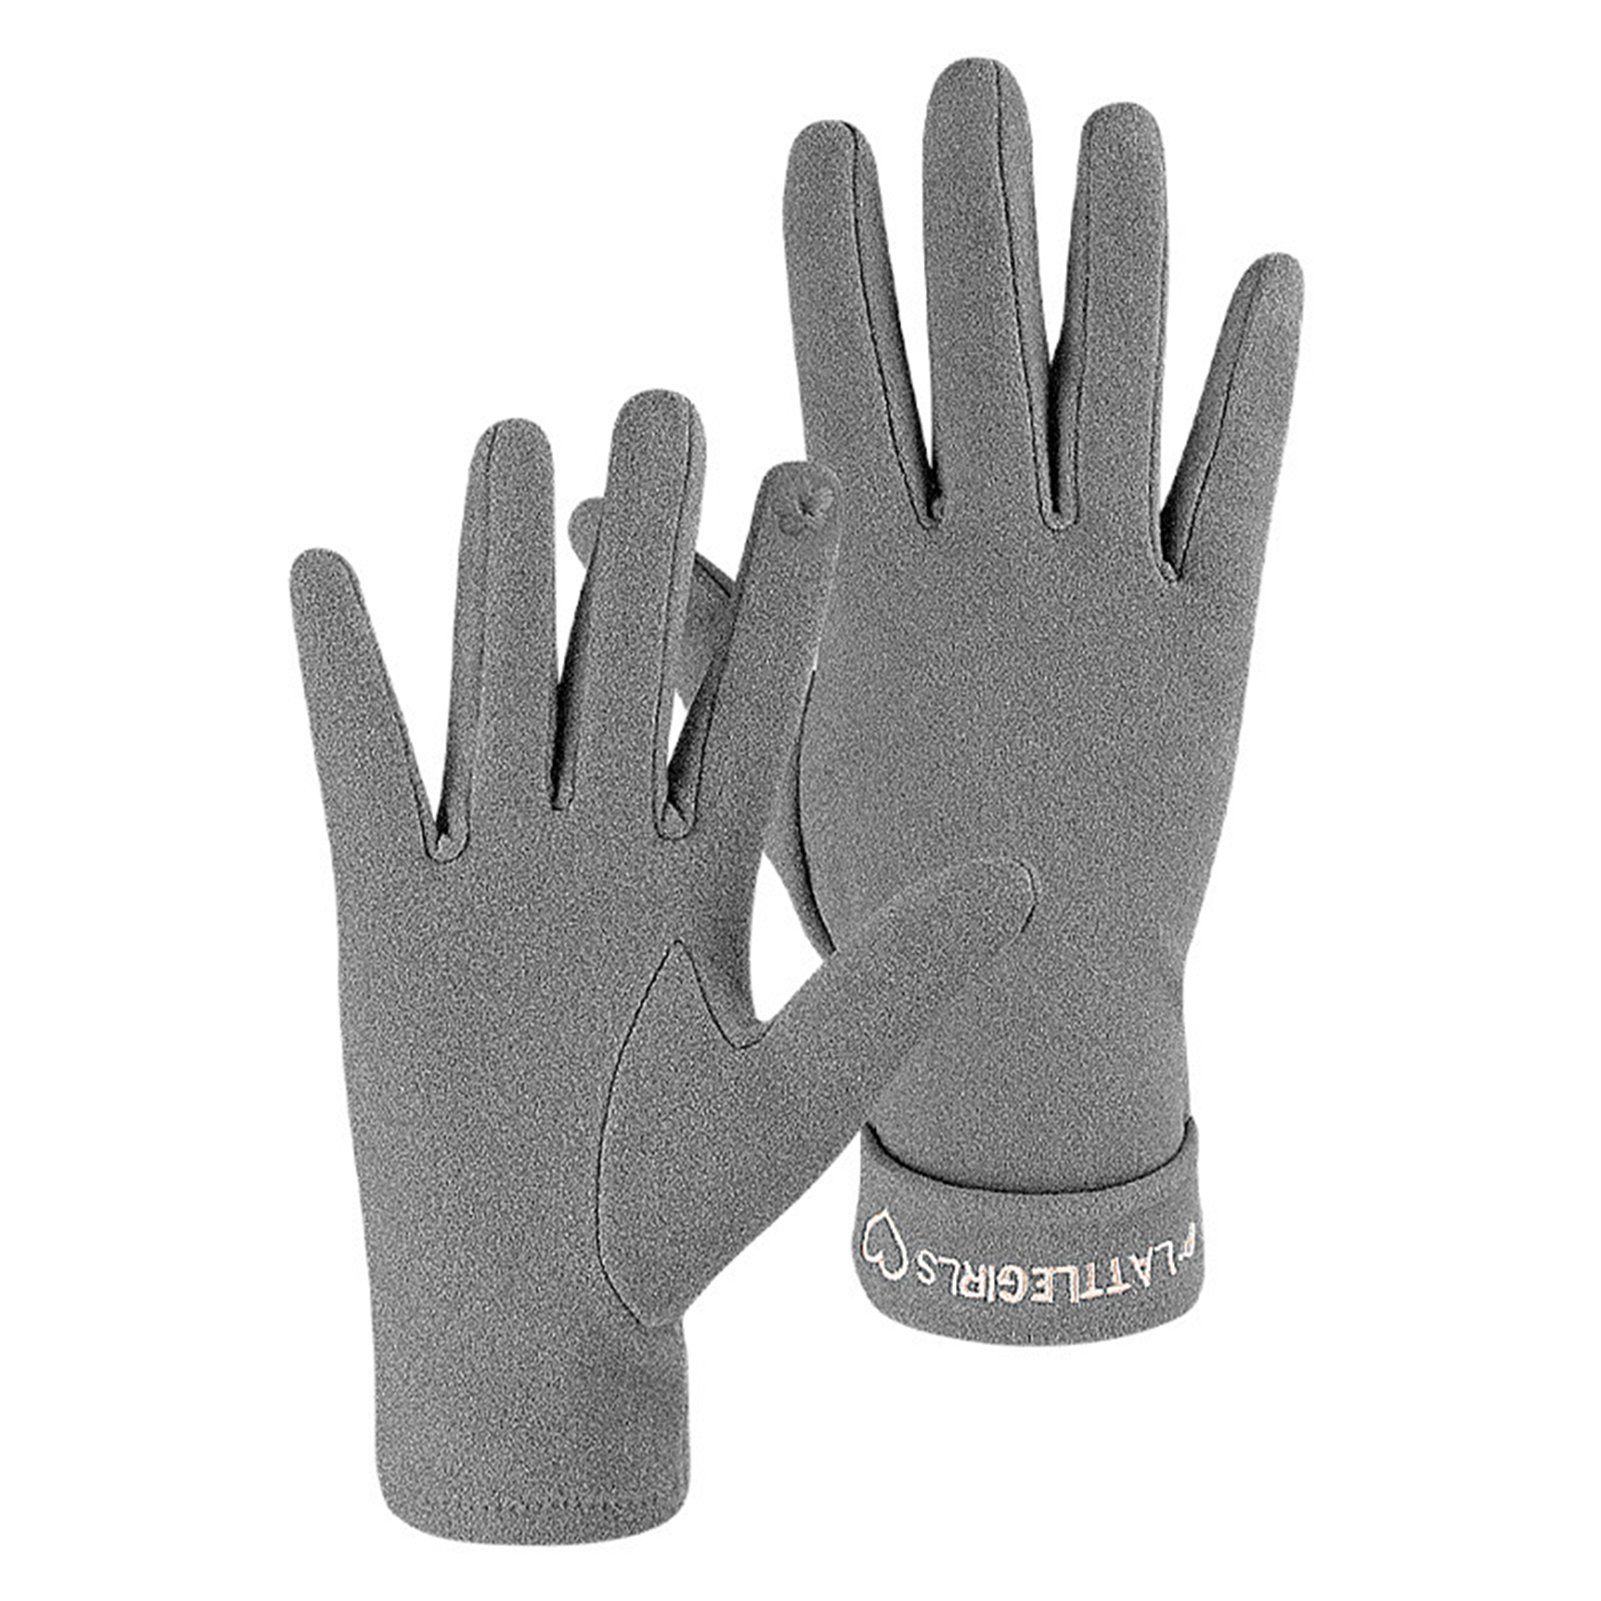 supergünstiger Preis Rutaqian Strickhandschuhe 1 Paar Warme Handschuhe Sport Fleece Damen Winter Gefüttert Damen für Warm Touchscreen Grau Fingerhandschuhe